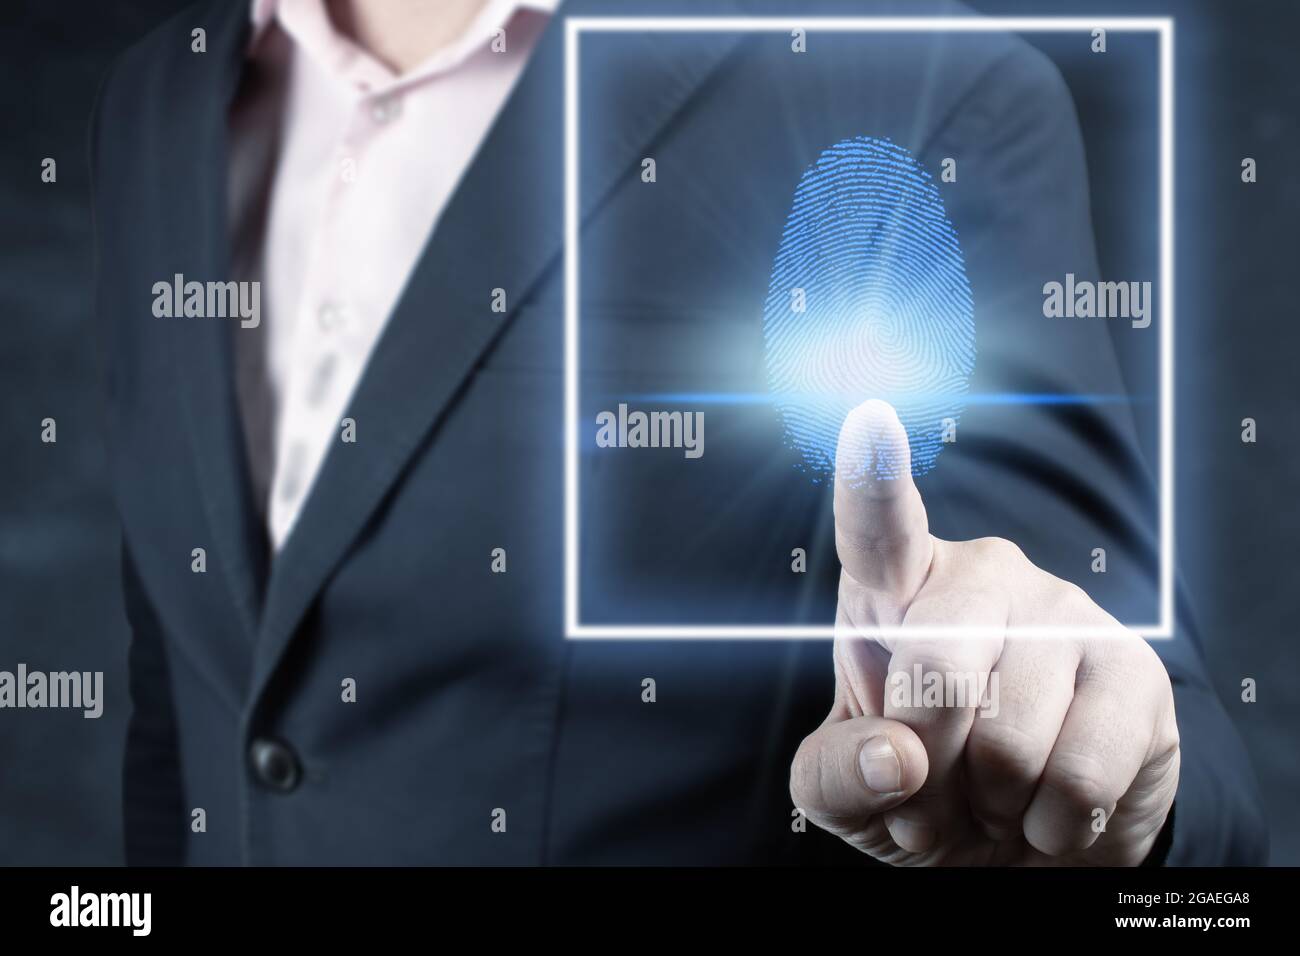 Fingerabdruck-Scan bietet Sicherheitszugang mit biometrischen Identifizierung, Person berühren Bildschirm mit Finger im Hintergrund. Geschäftsmann scannen fingerpri Stockfoto